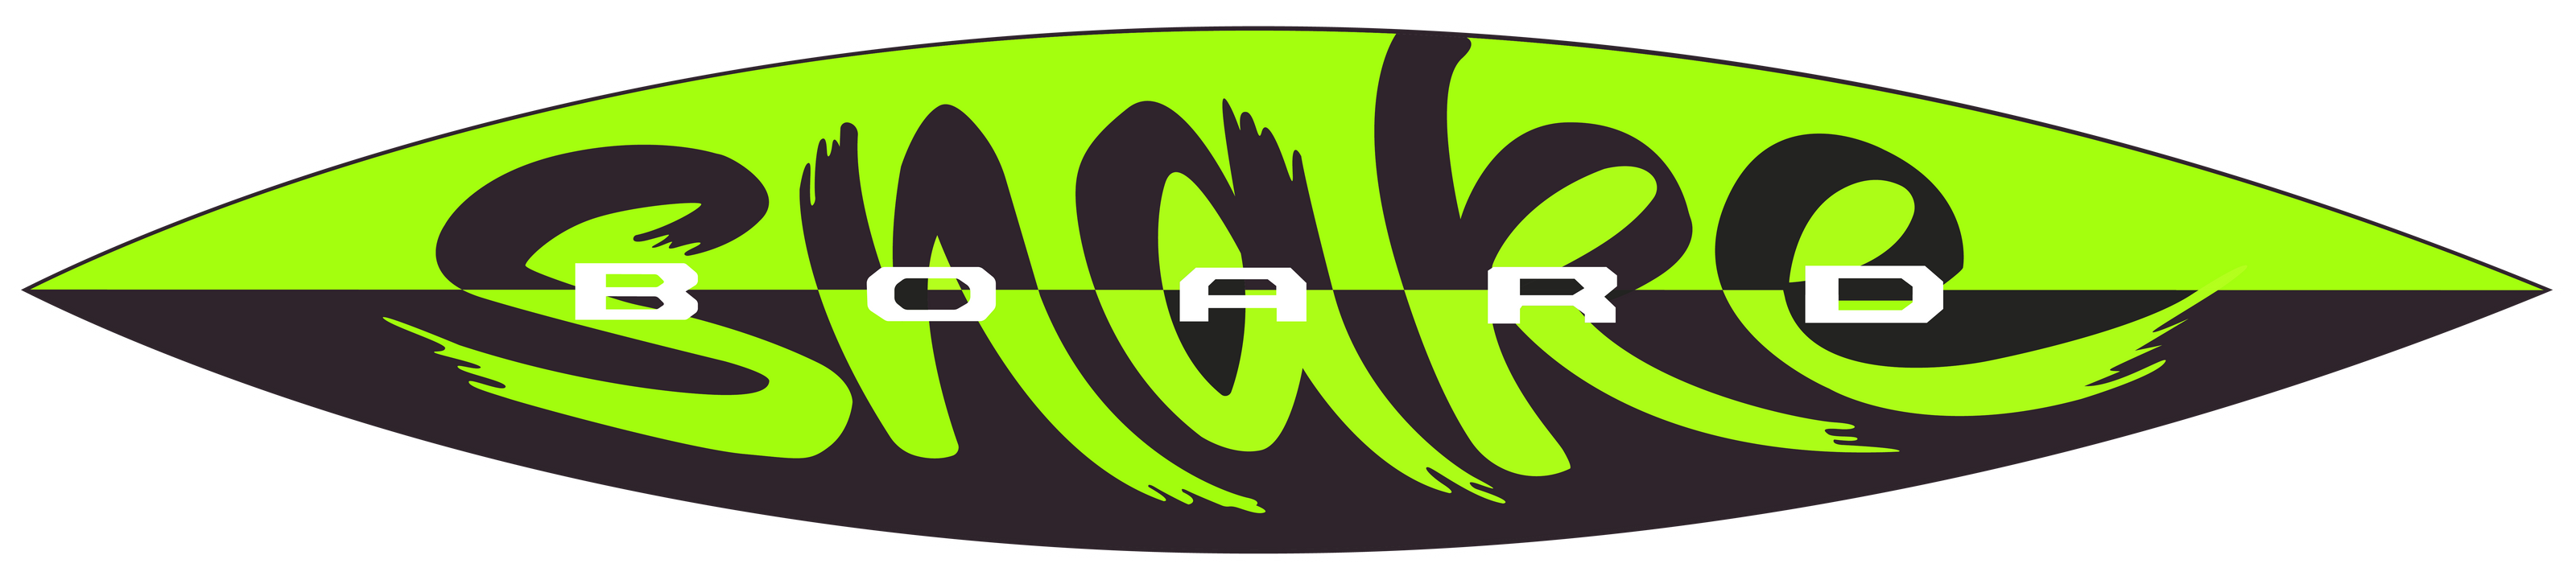 Snakeboard logo